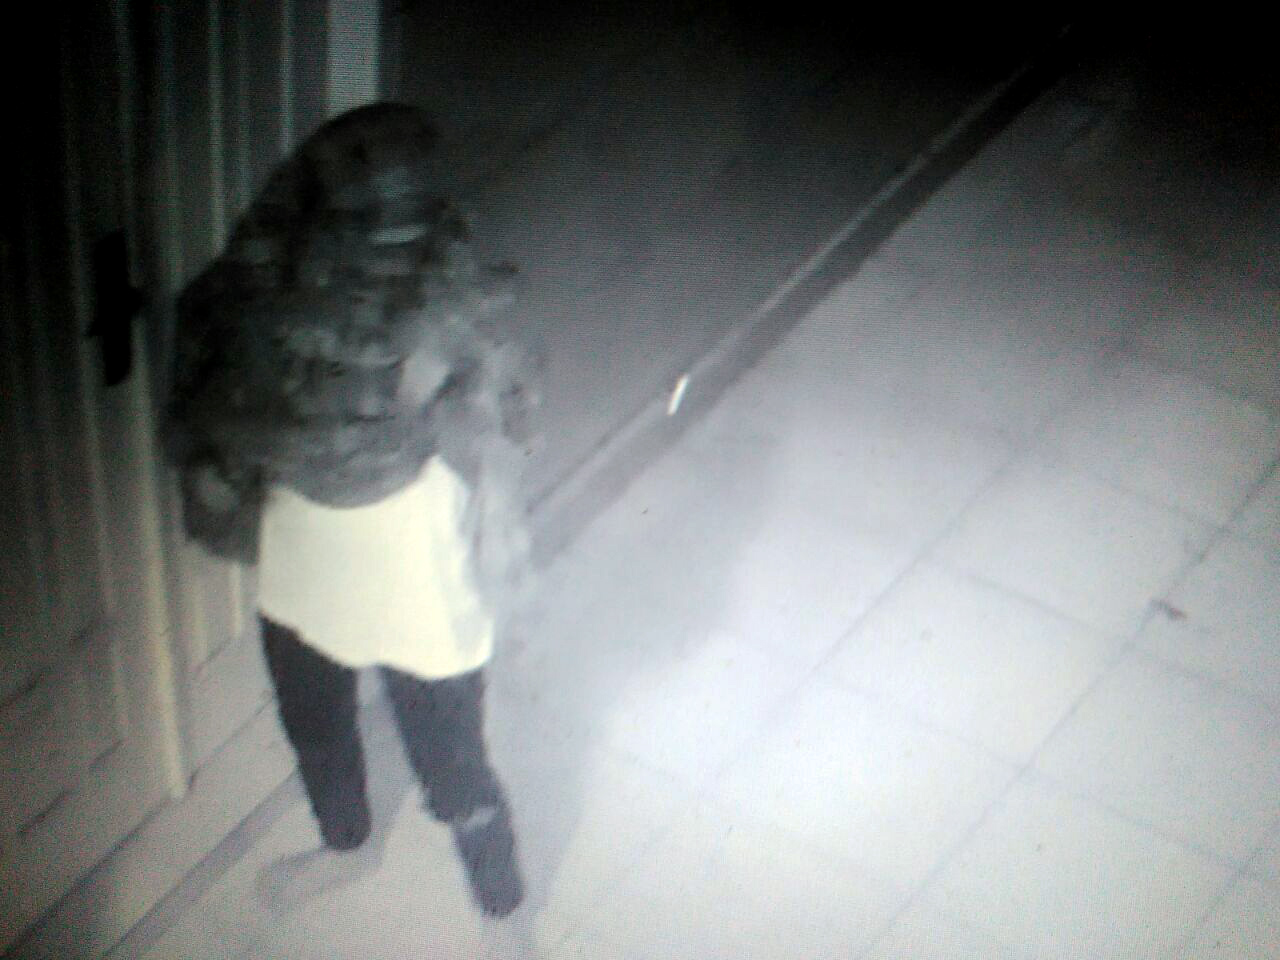 Pencuri beraksi di SMK Bhakti Utama terekam kamera CCTV. (ist)